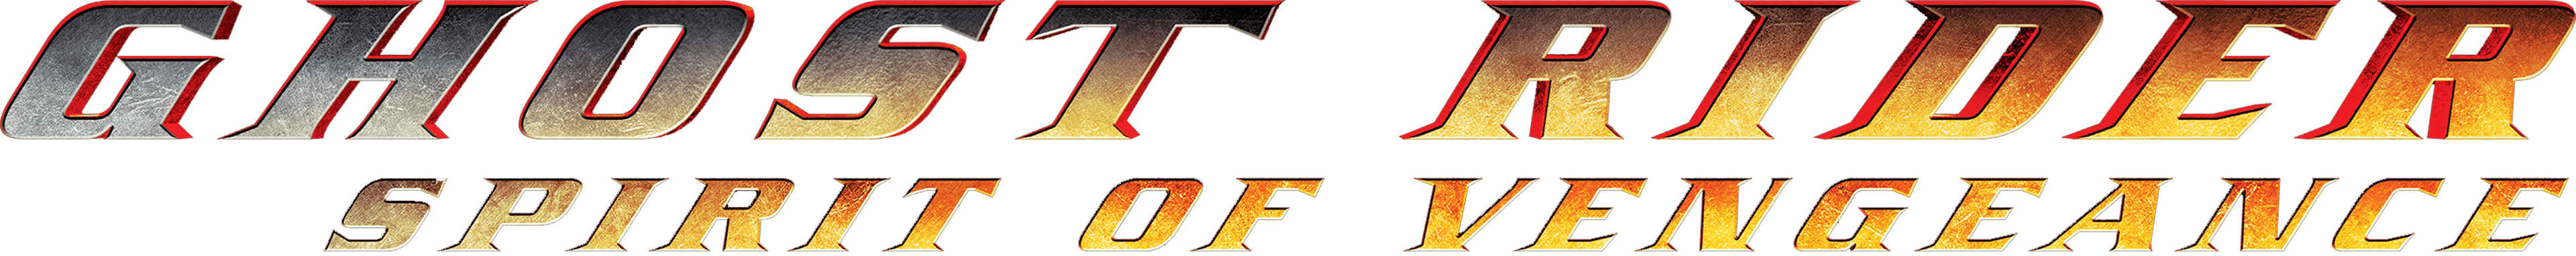 Ghost Rider: Spirit of Vengeance logo